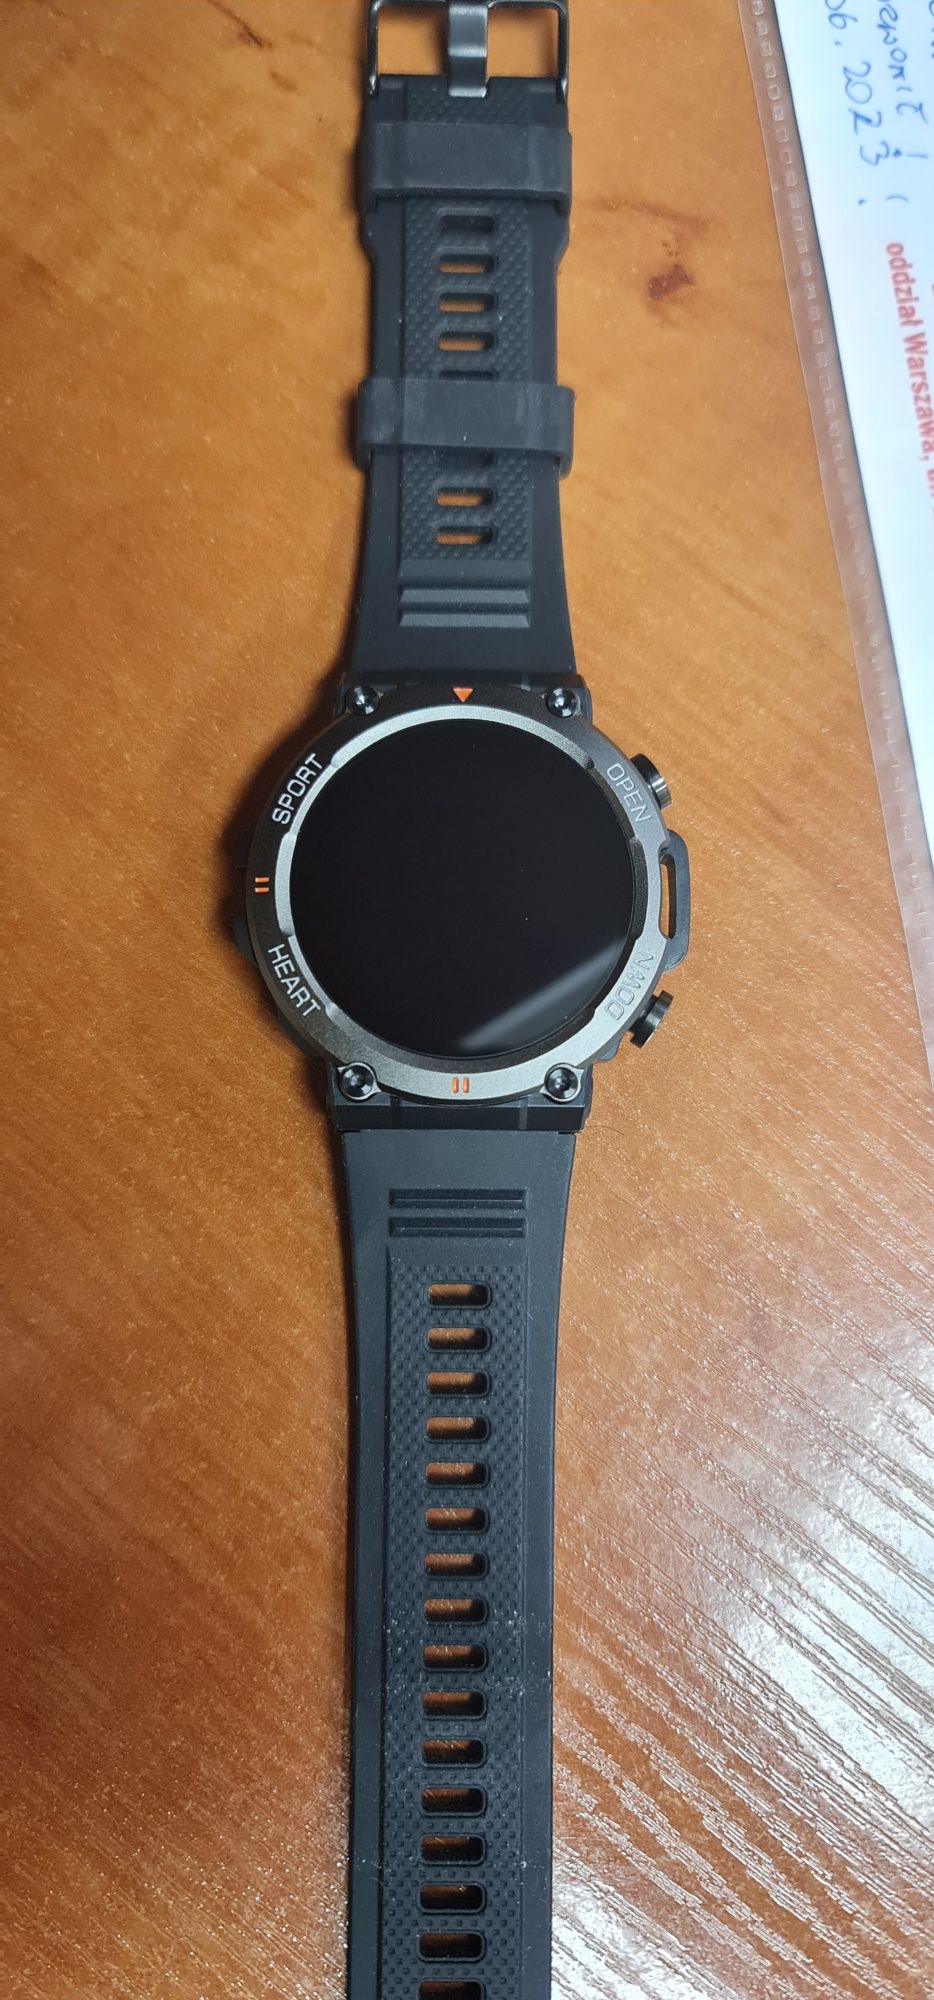 Smartwatch zegarek wodoodporny